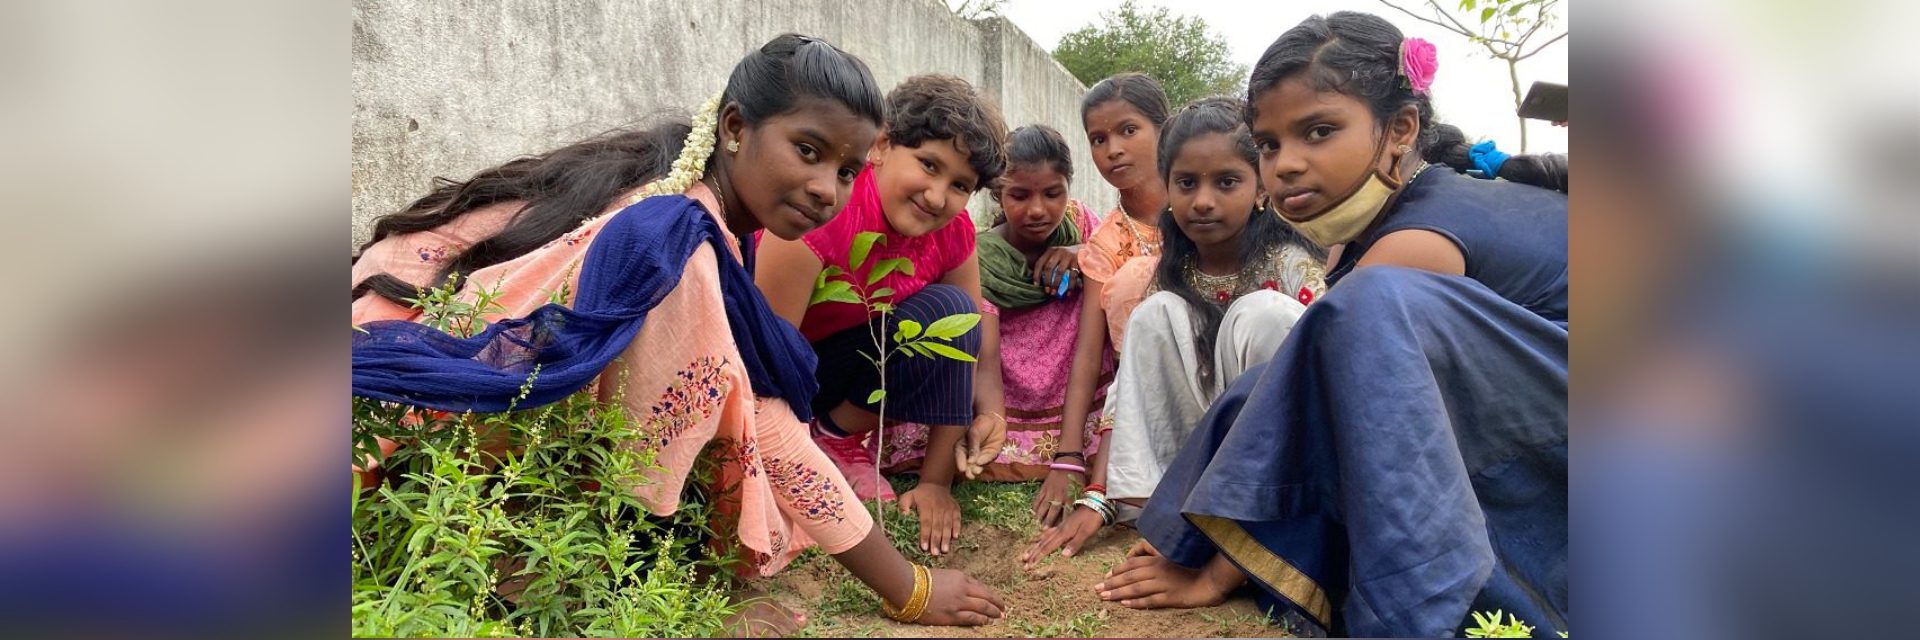 Прасиддхи Сингх: девятилетний эколог, взрастивший 19 фруктовых лесов.